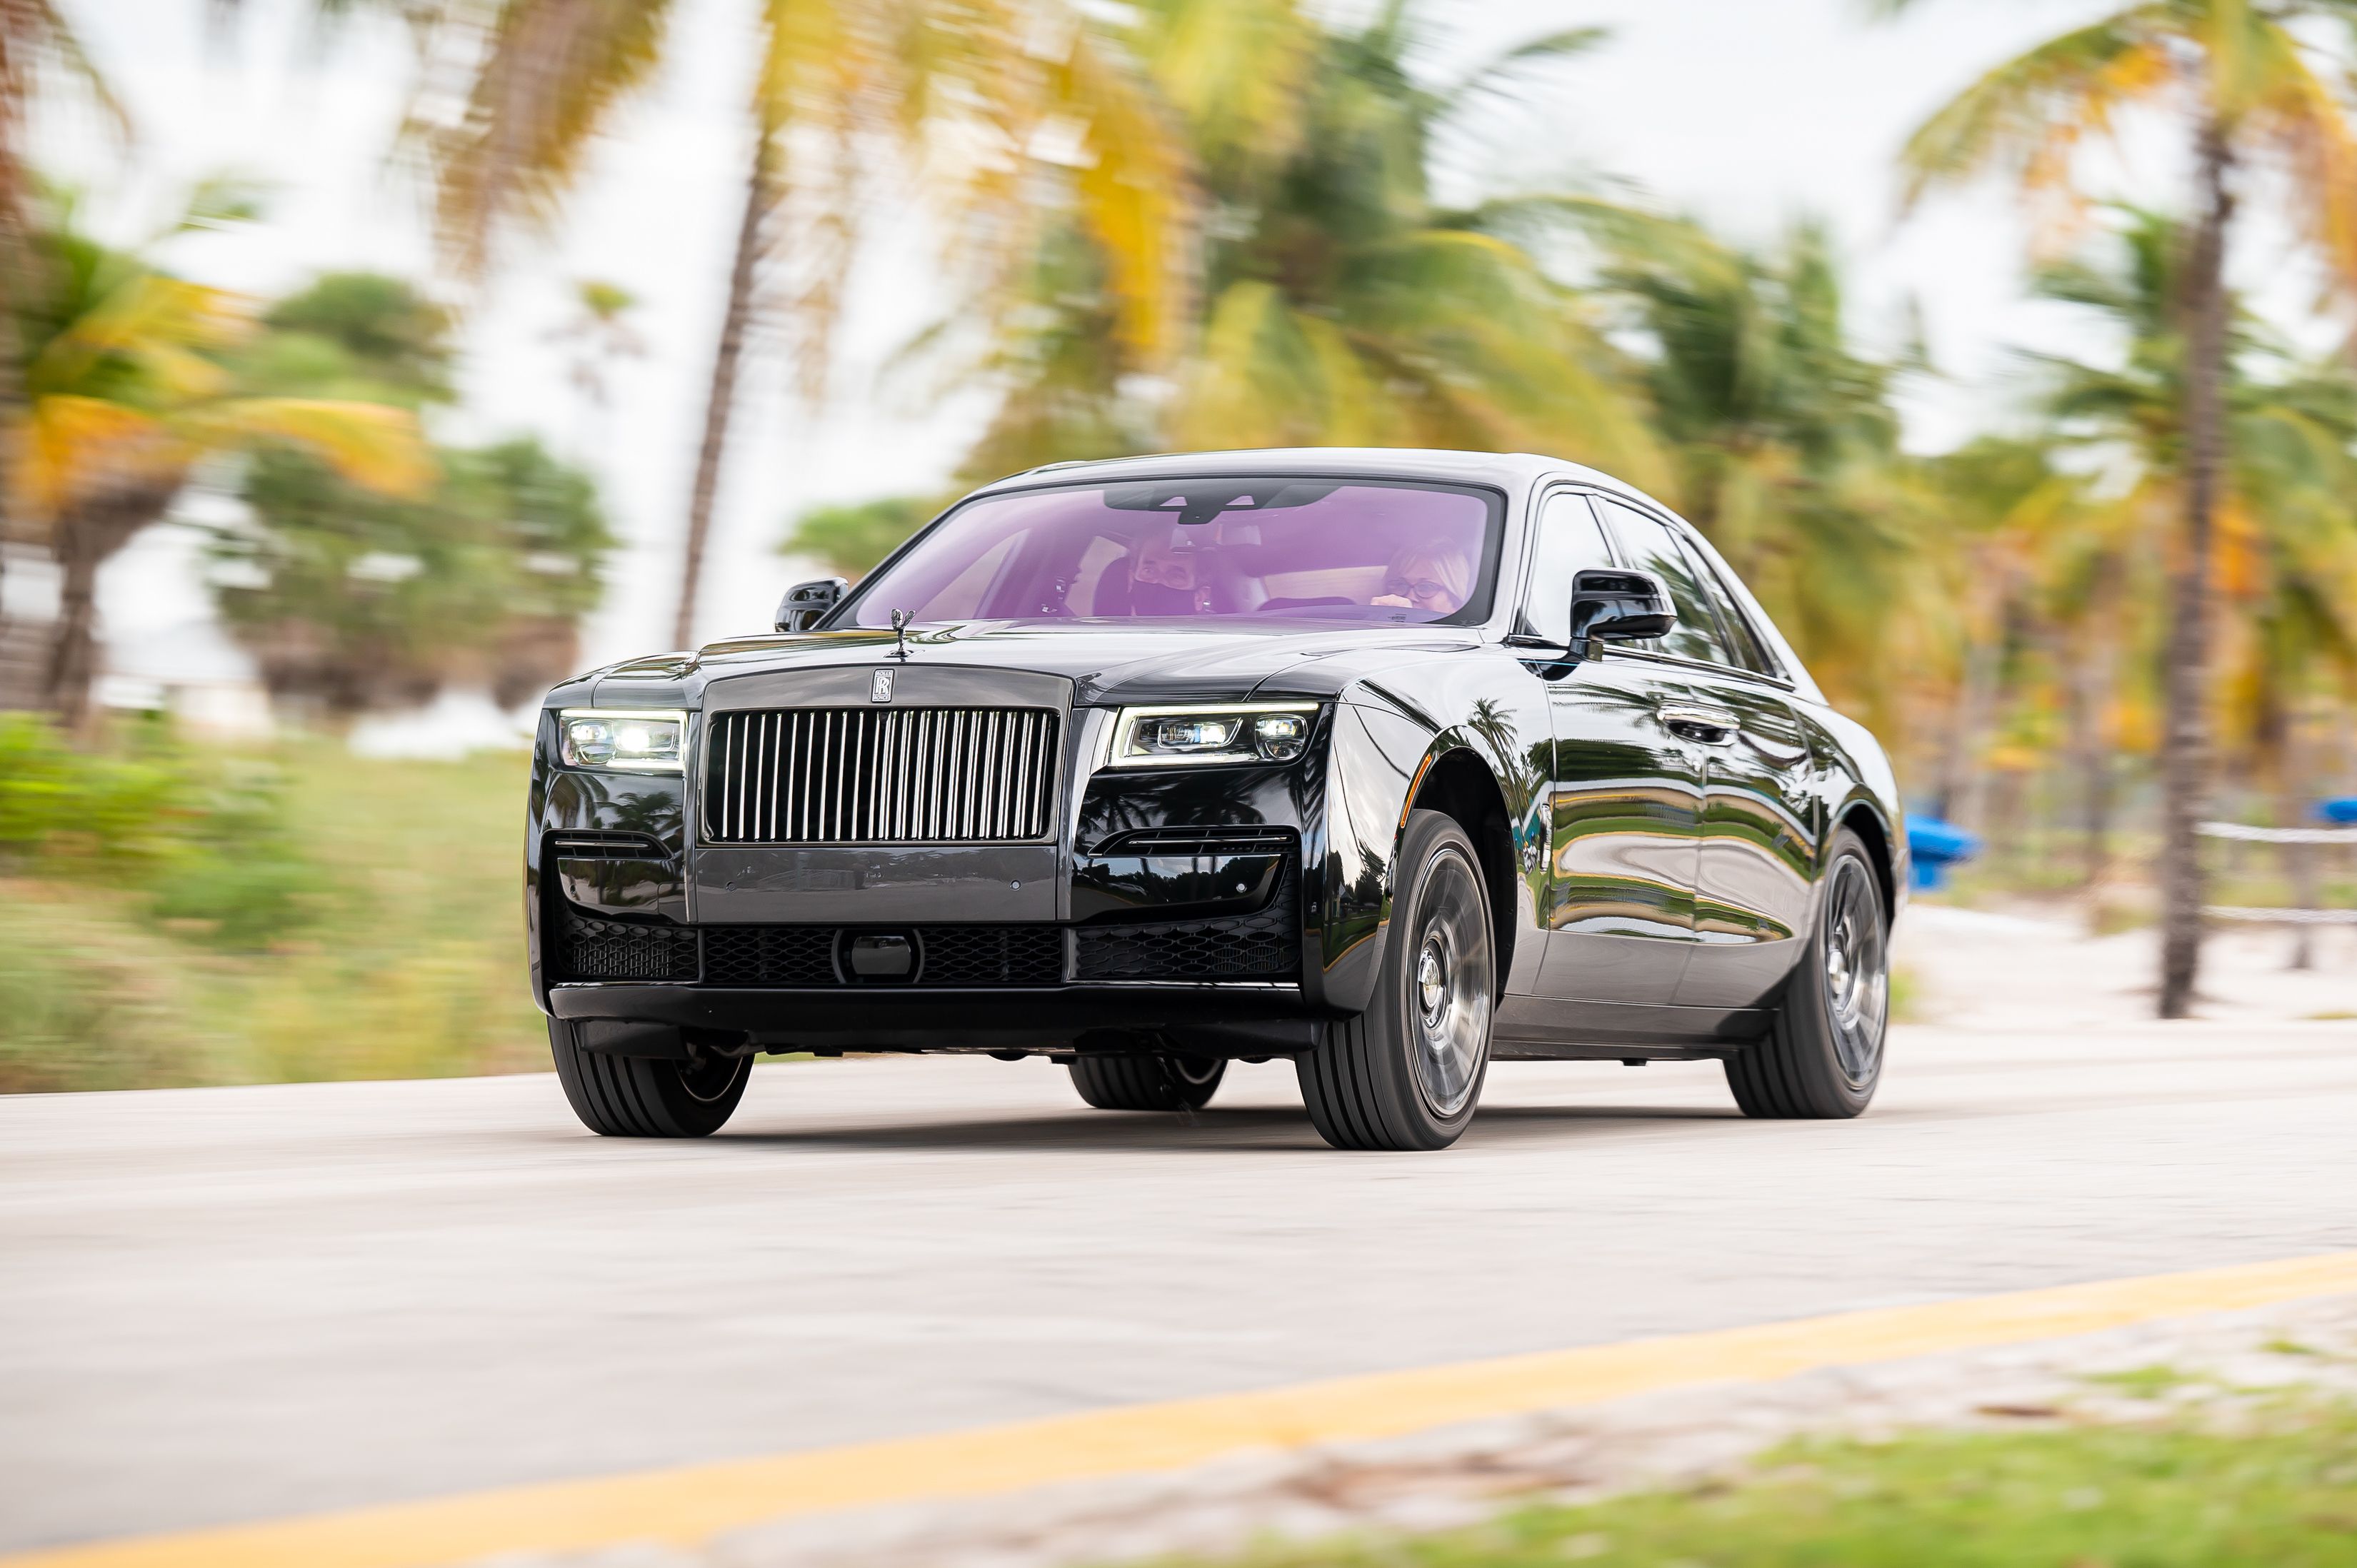 Maker Of Stunning CustomMade Rolls Royce Phantom Hopes To Sell It For 52  Million